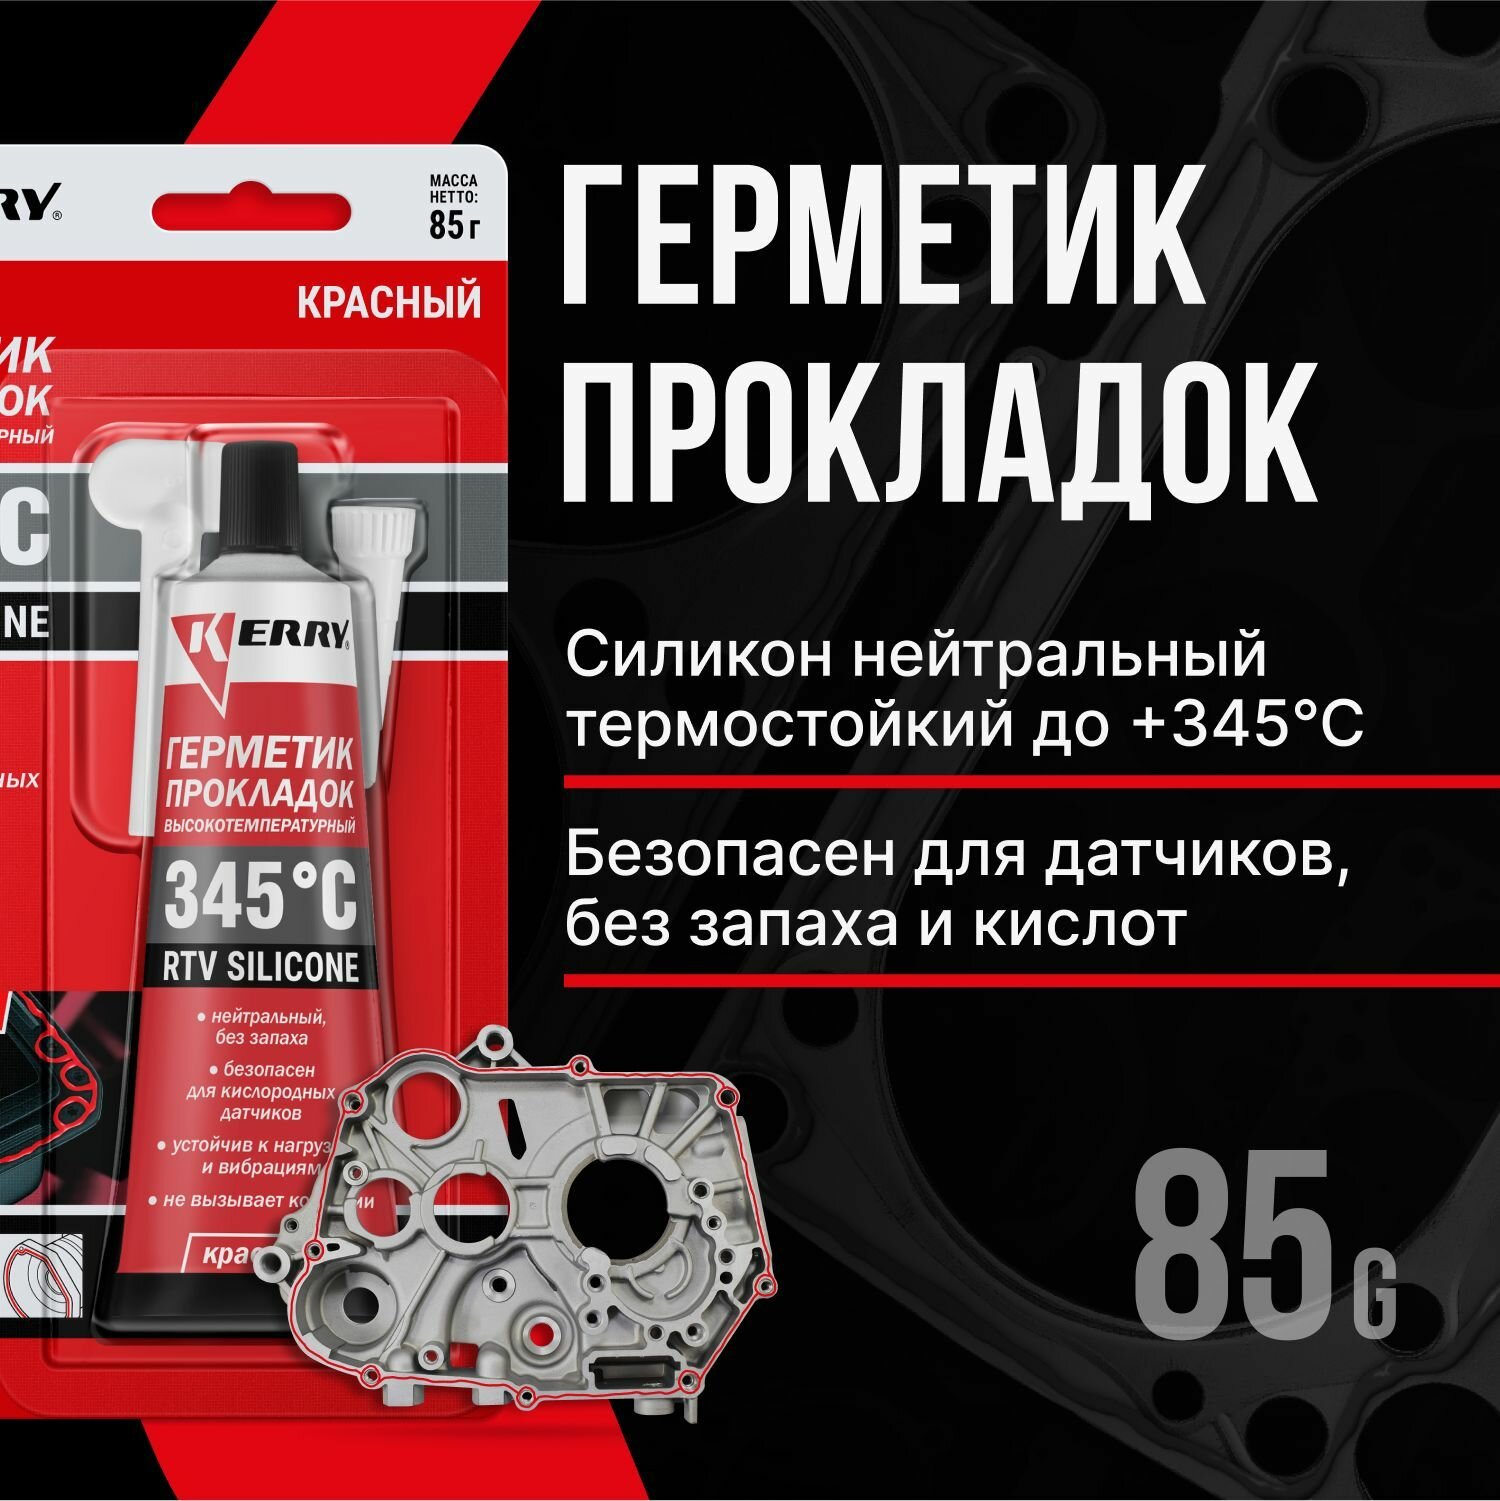 Герметик прокладка красный нейтральный (высокотемпературный) RTV 85 гр KR-145-1 Kerry